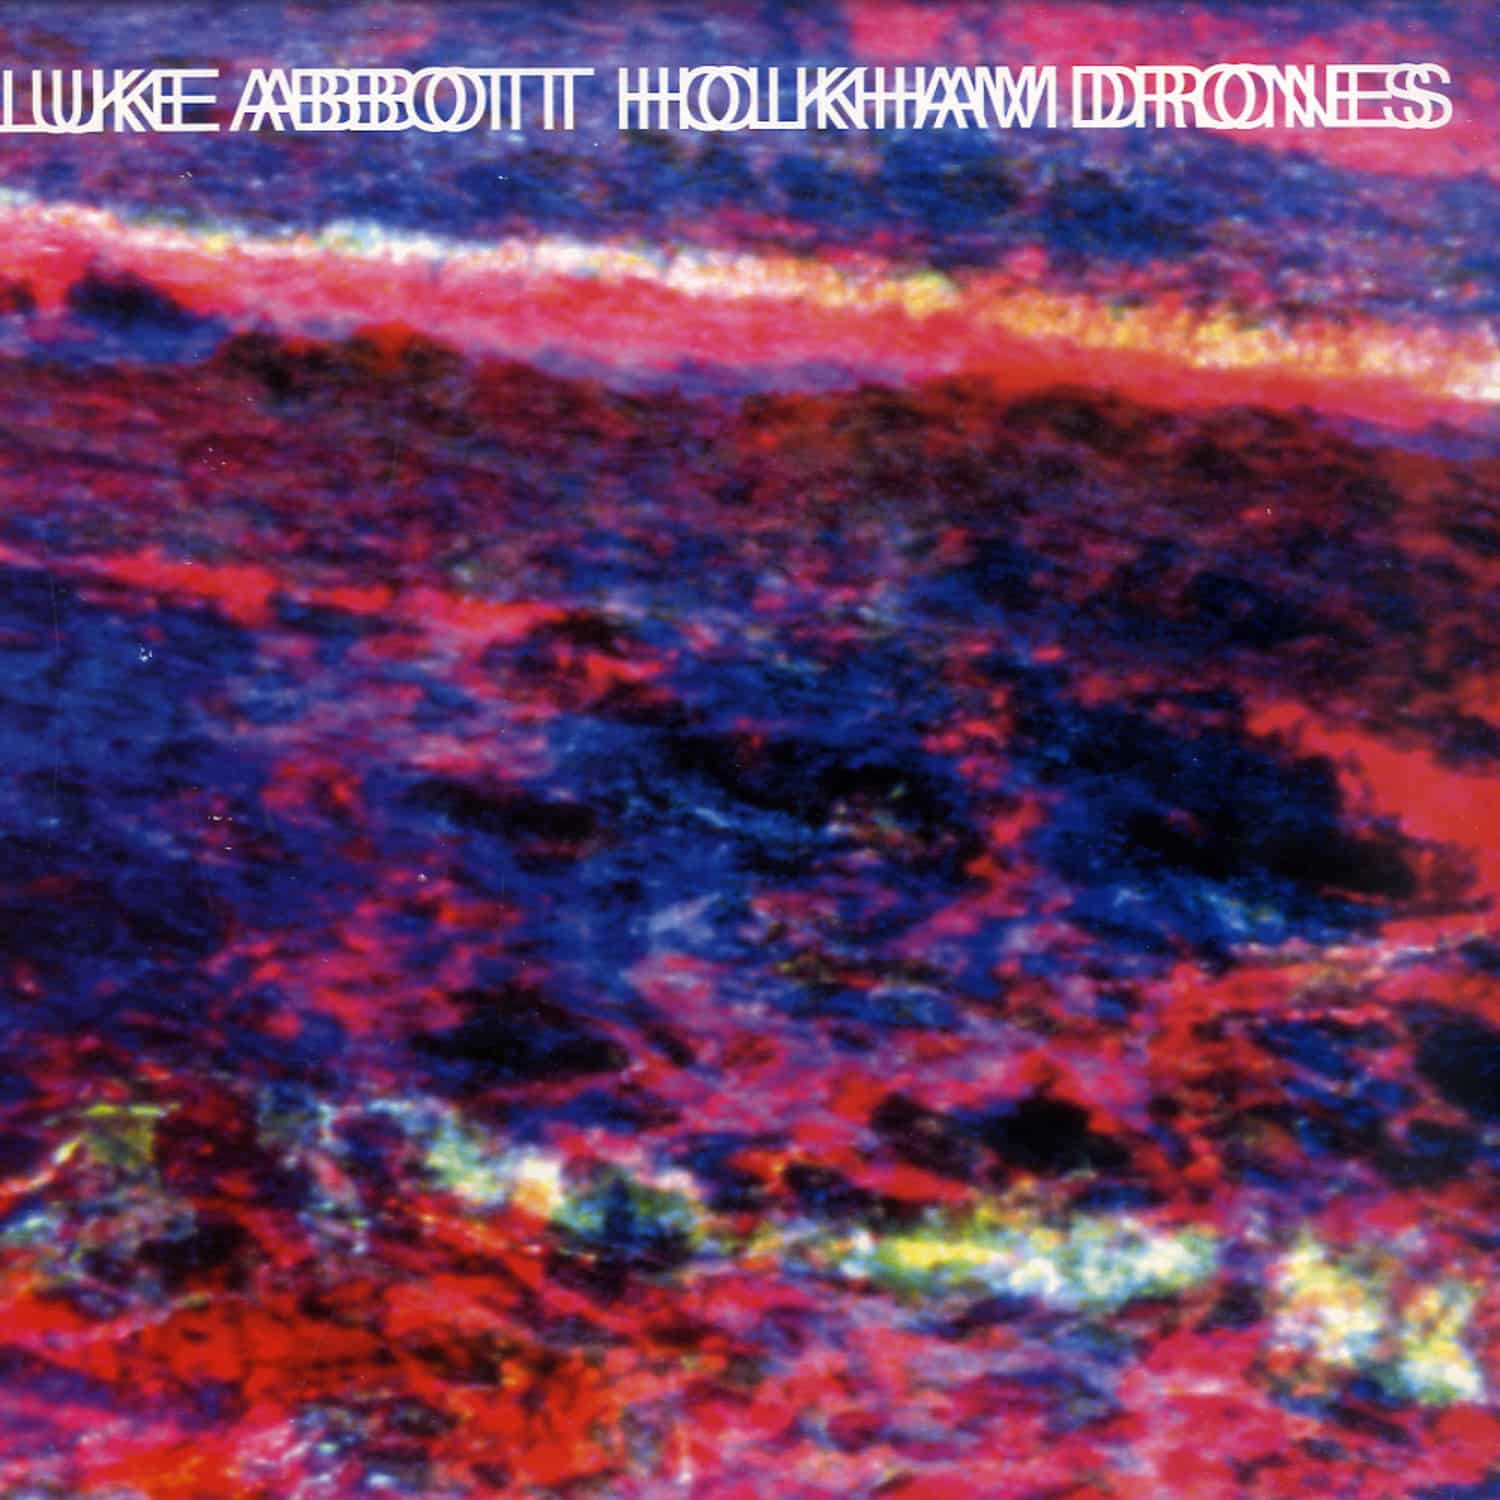 Luke Abbott - HOLKHAM DRONES 